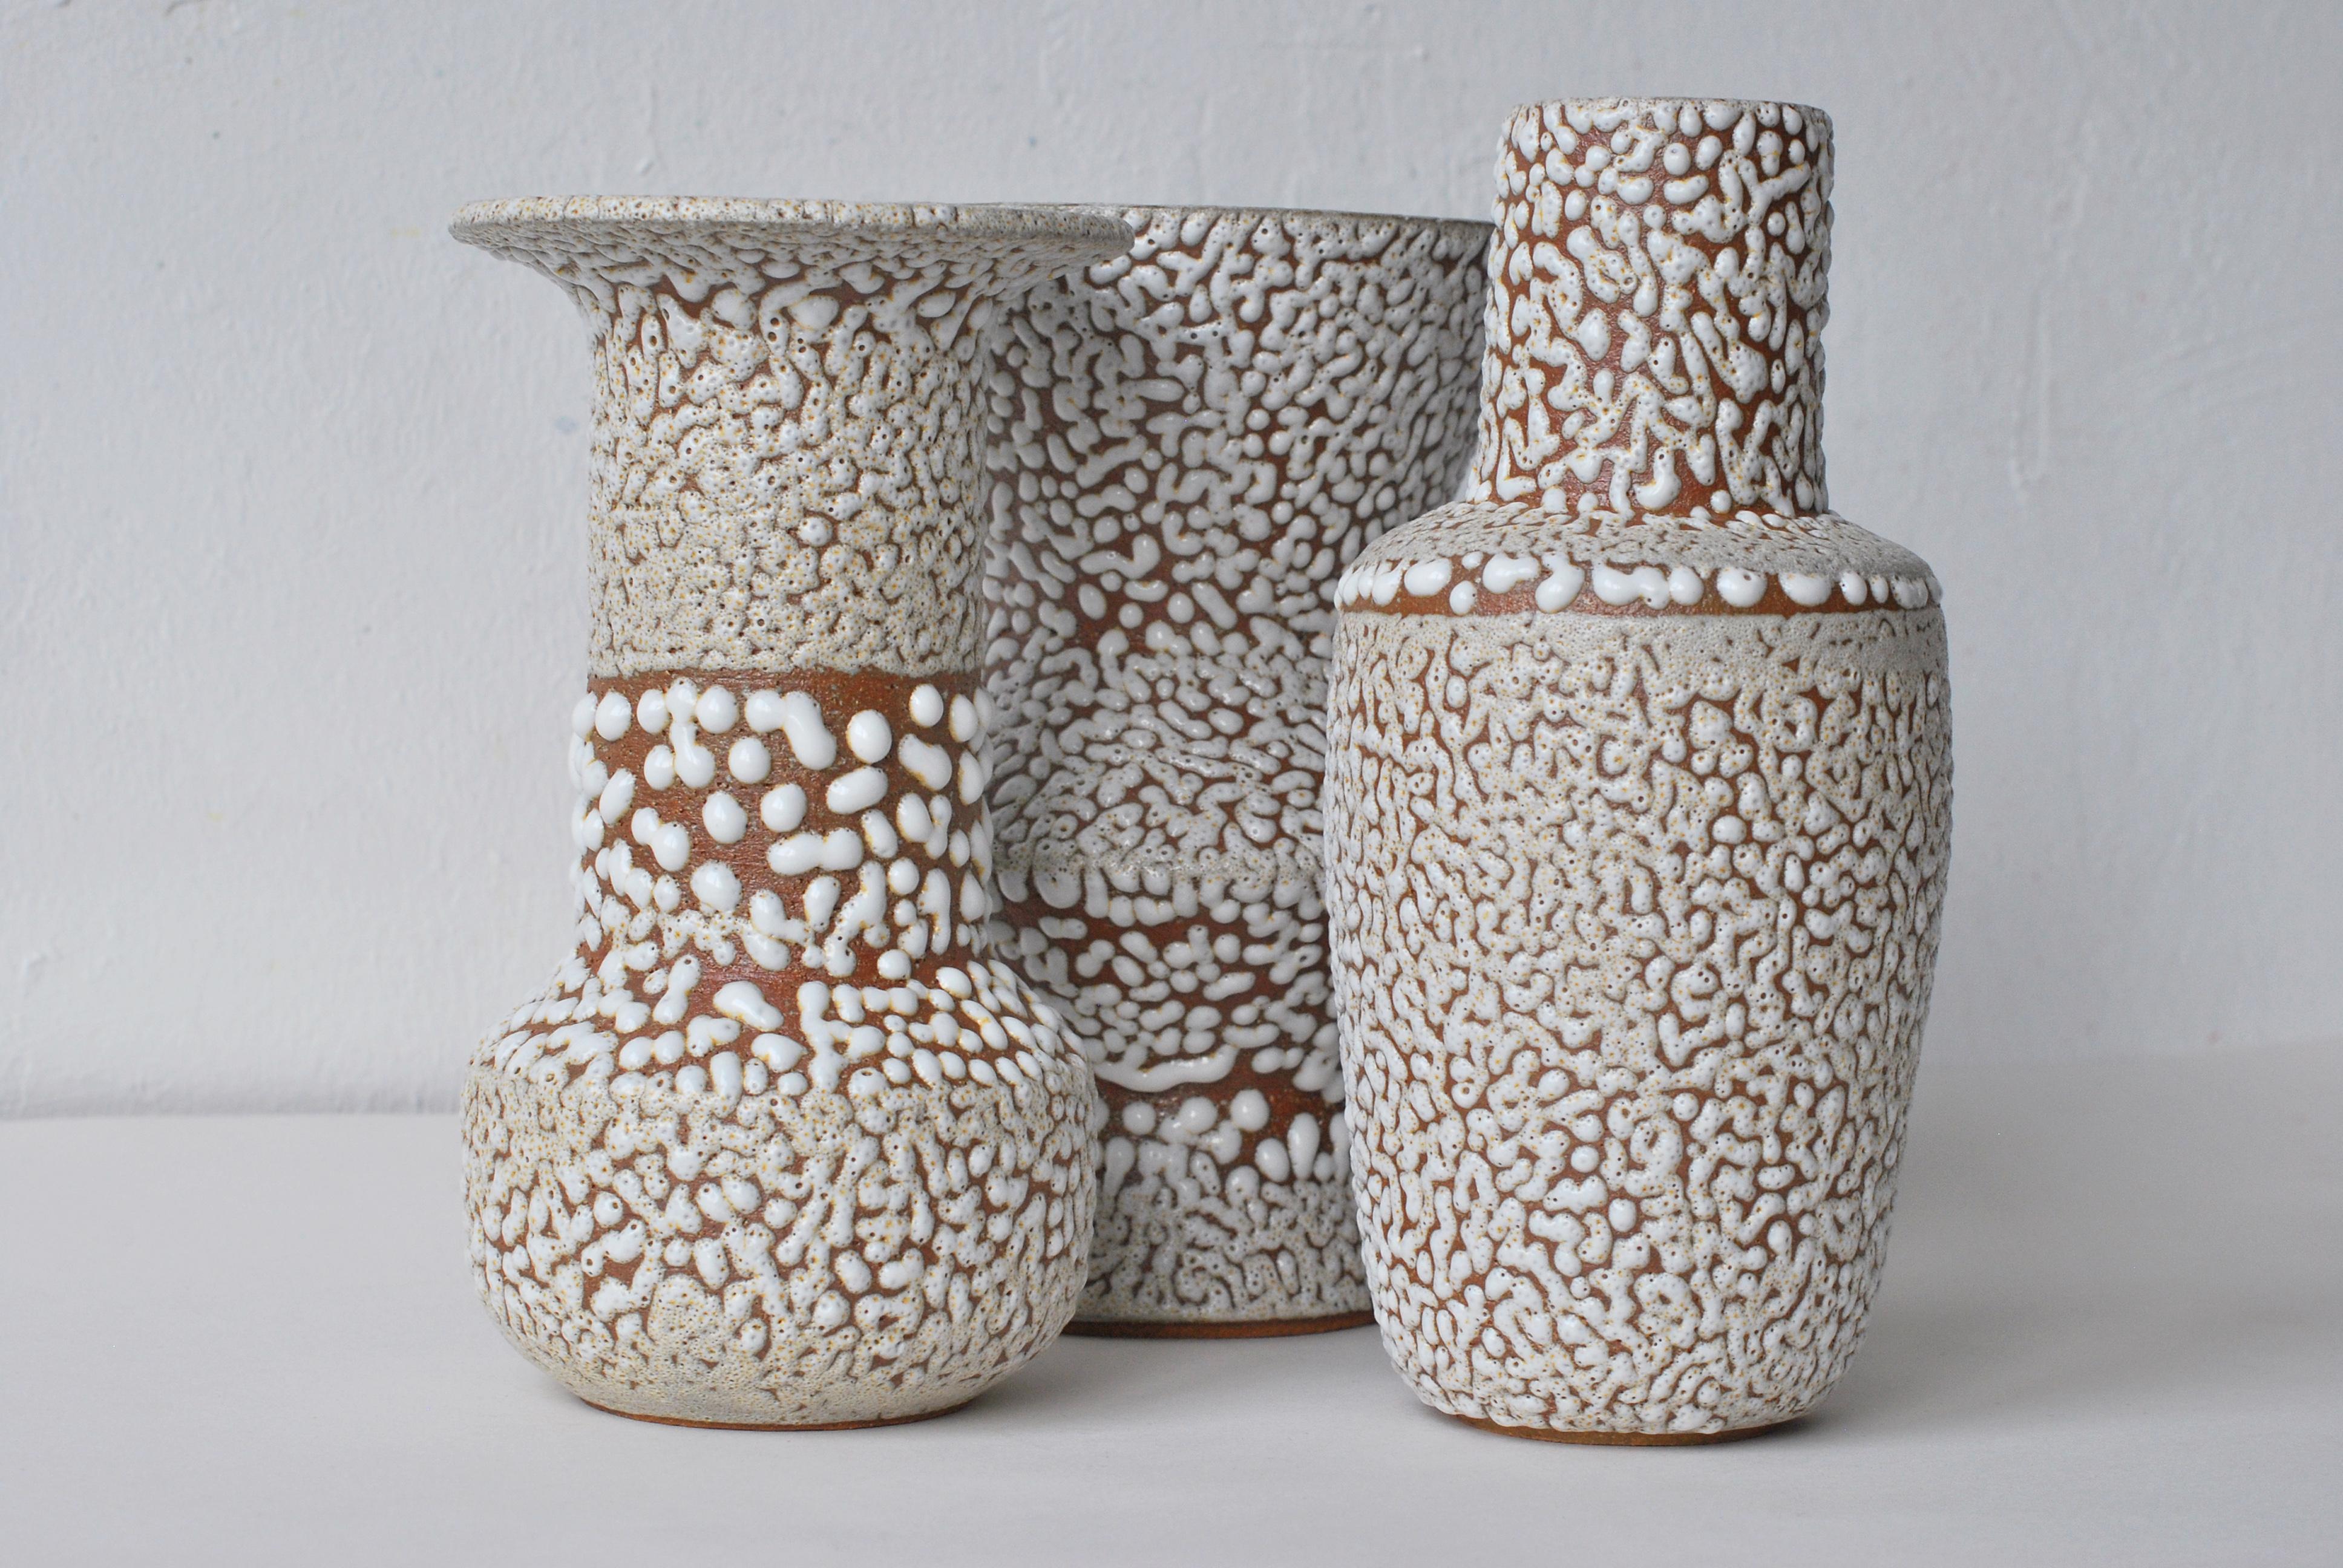 German Set of 3 White Stoneware Vase by Moïo Studio